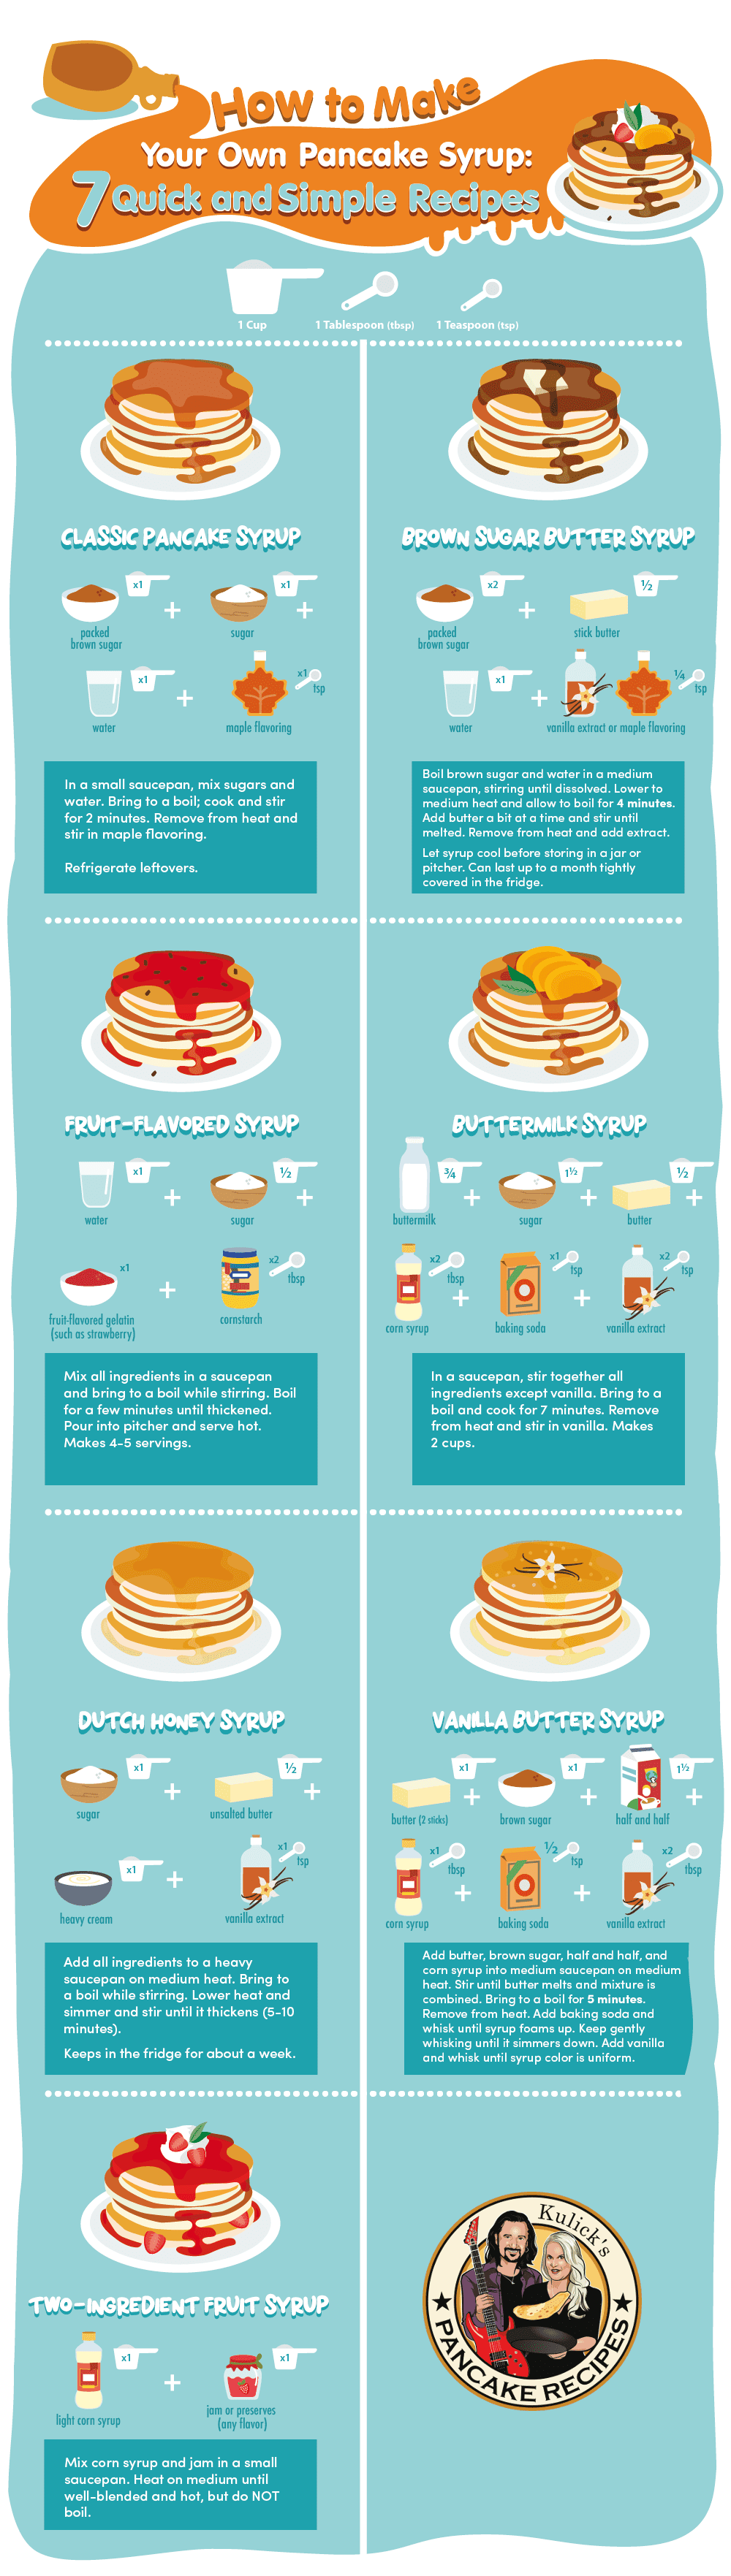 make-pancake-syrup-recipes-3